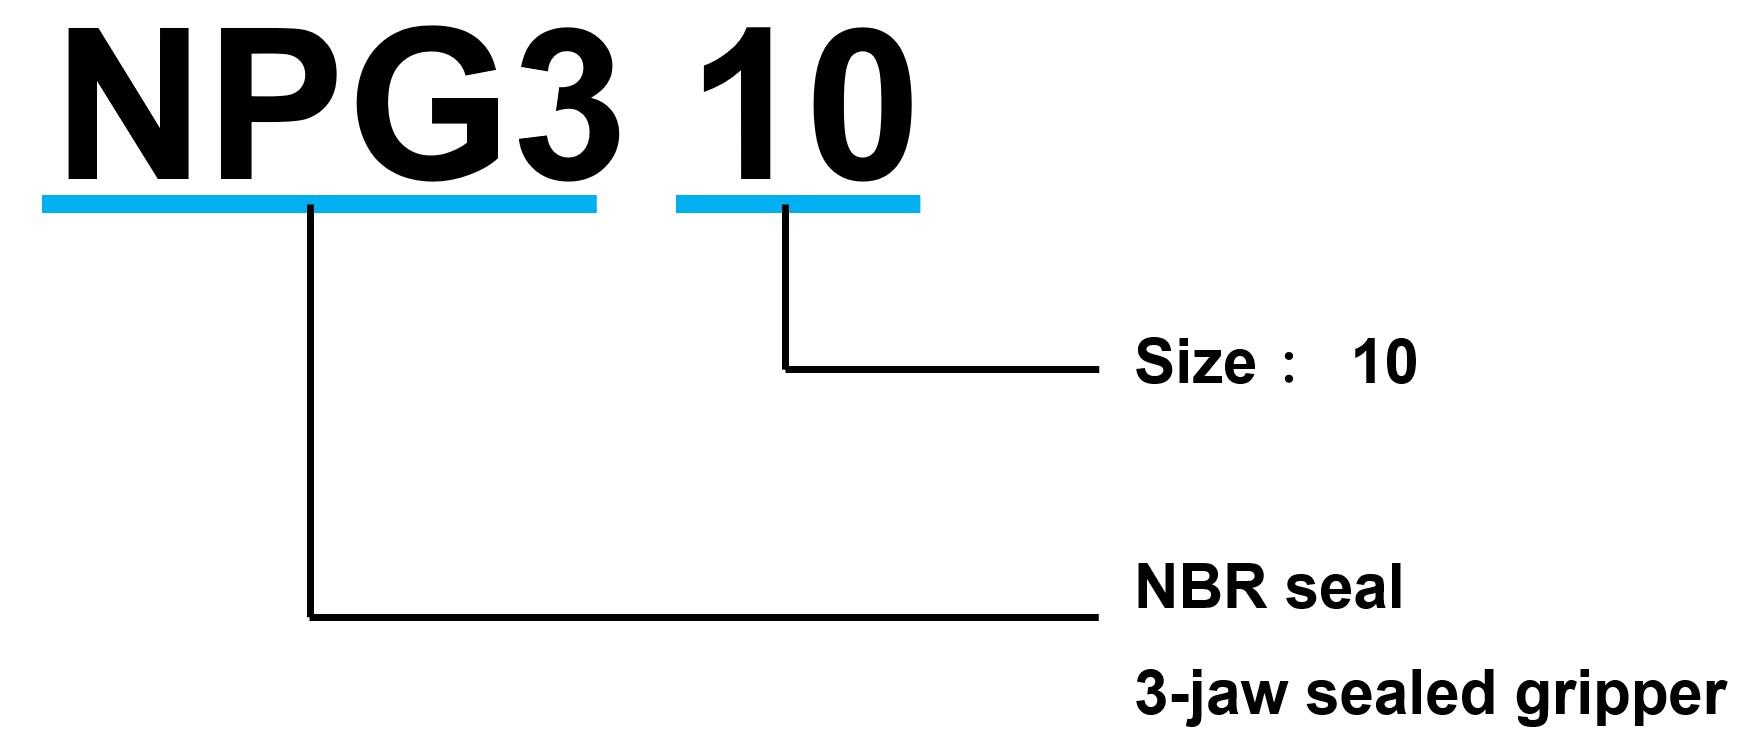 NPG3 series